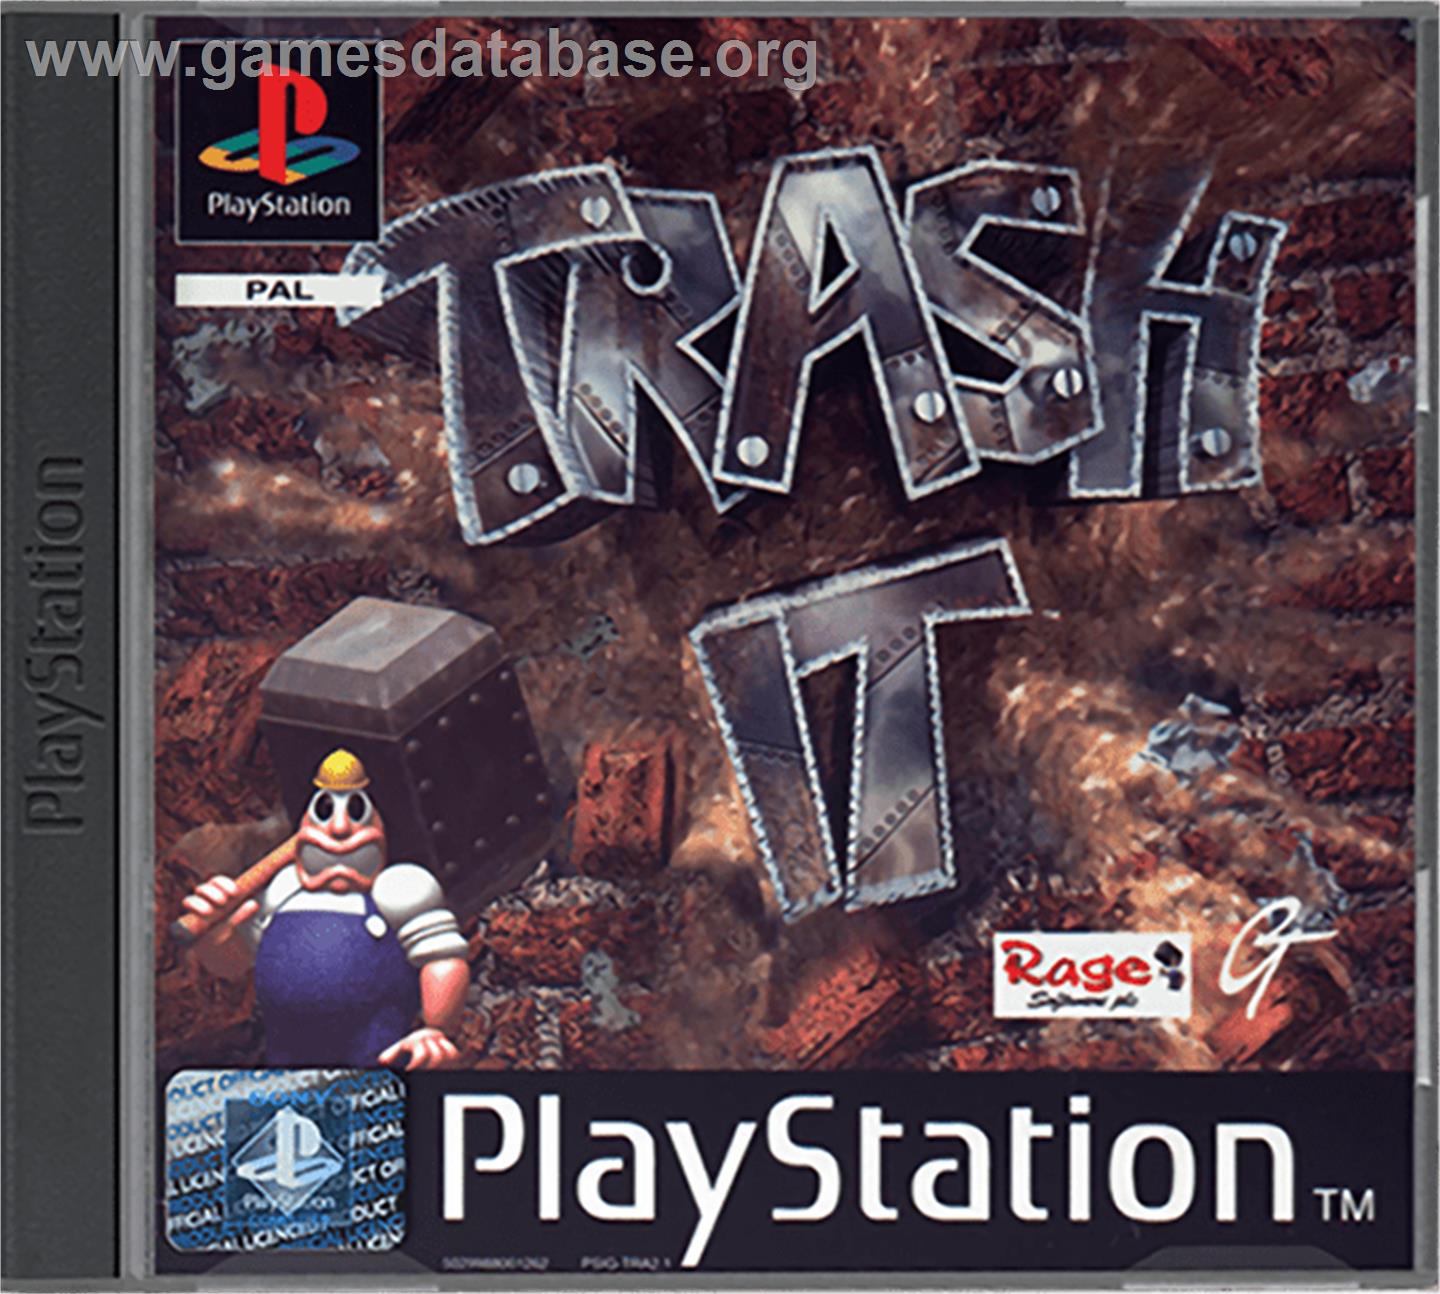 Trash It - Sony Playstation - Artwork - Box